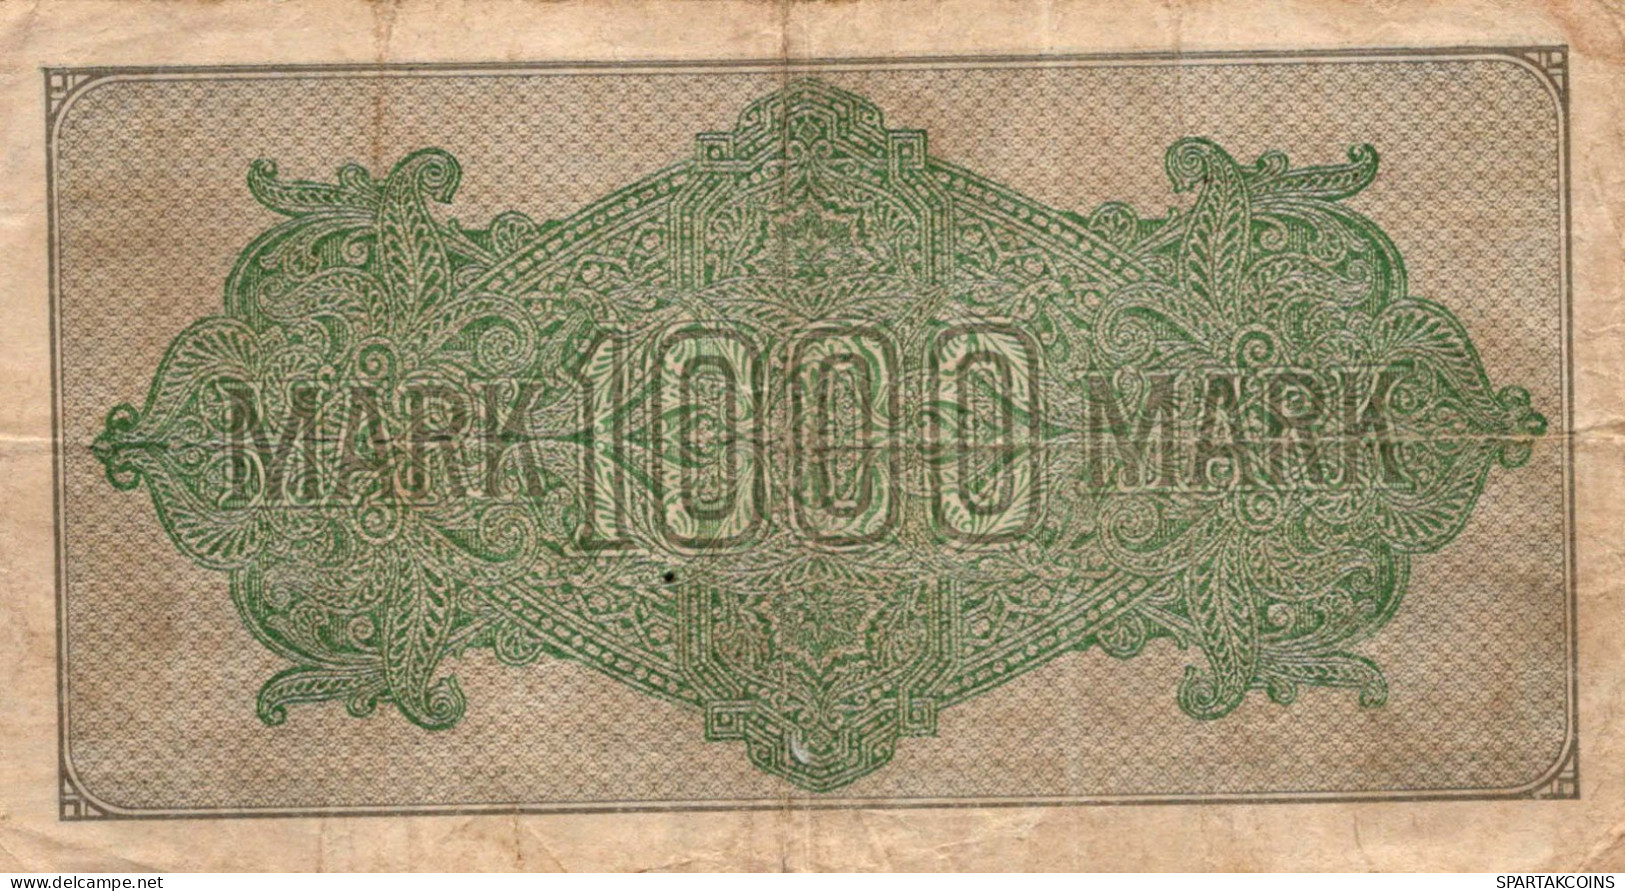 1000 MARK 1922 Stadt BERLIN DEUTSCHLAND Papiergeld Banknote #PL020 - [11] Emisiones Locales